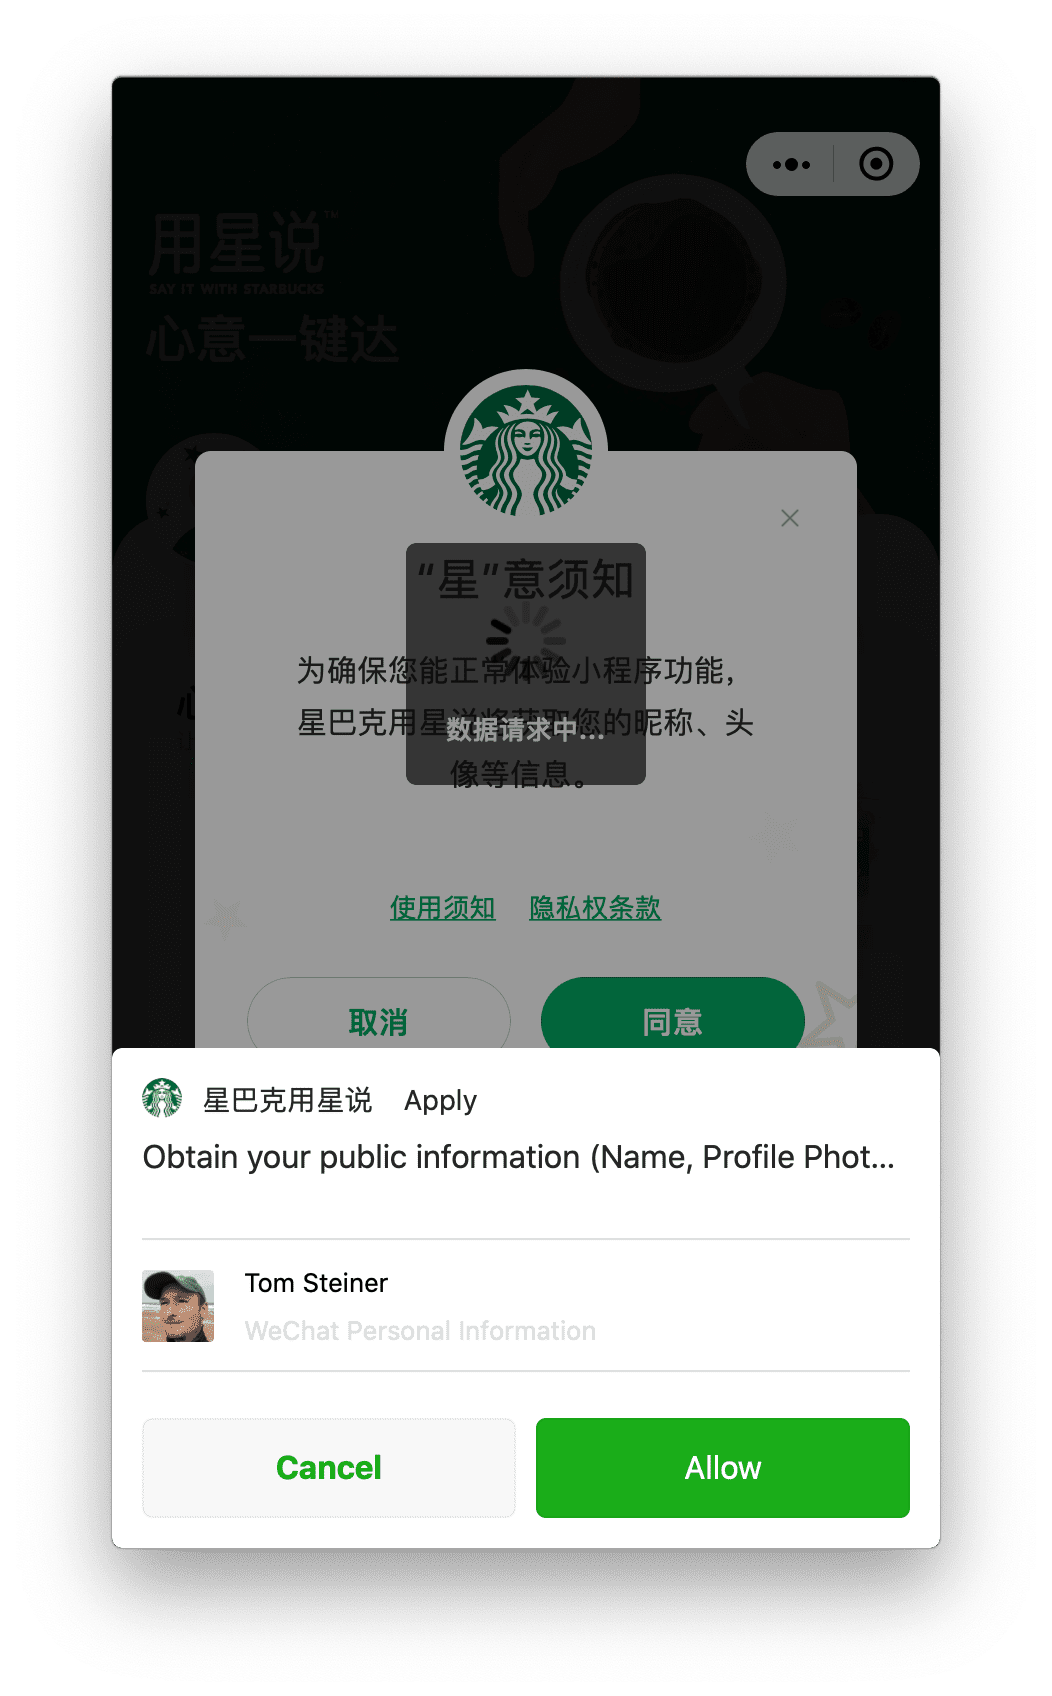 Мини-приложение Starbucks, работающее на macOS, запрашивает разрешение профиля пользователя, которое пользователь может предоставить с помощью приглашения, показанного внизу.